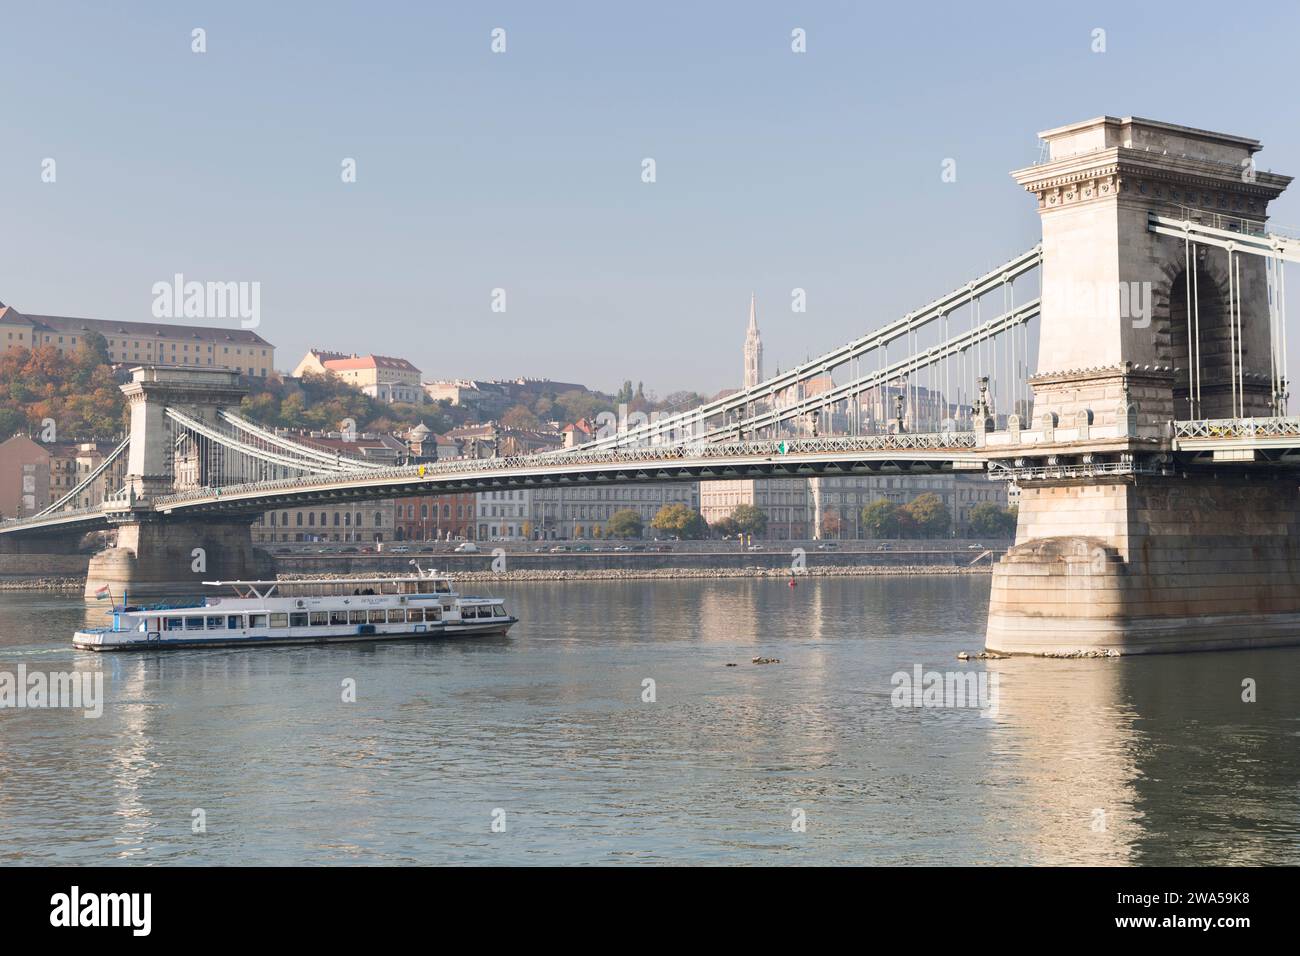 Hungary, Budapest, the Chain Bridge. Stock Photo